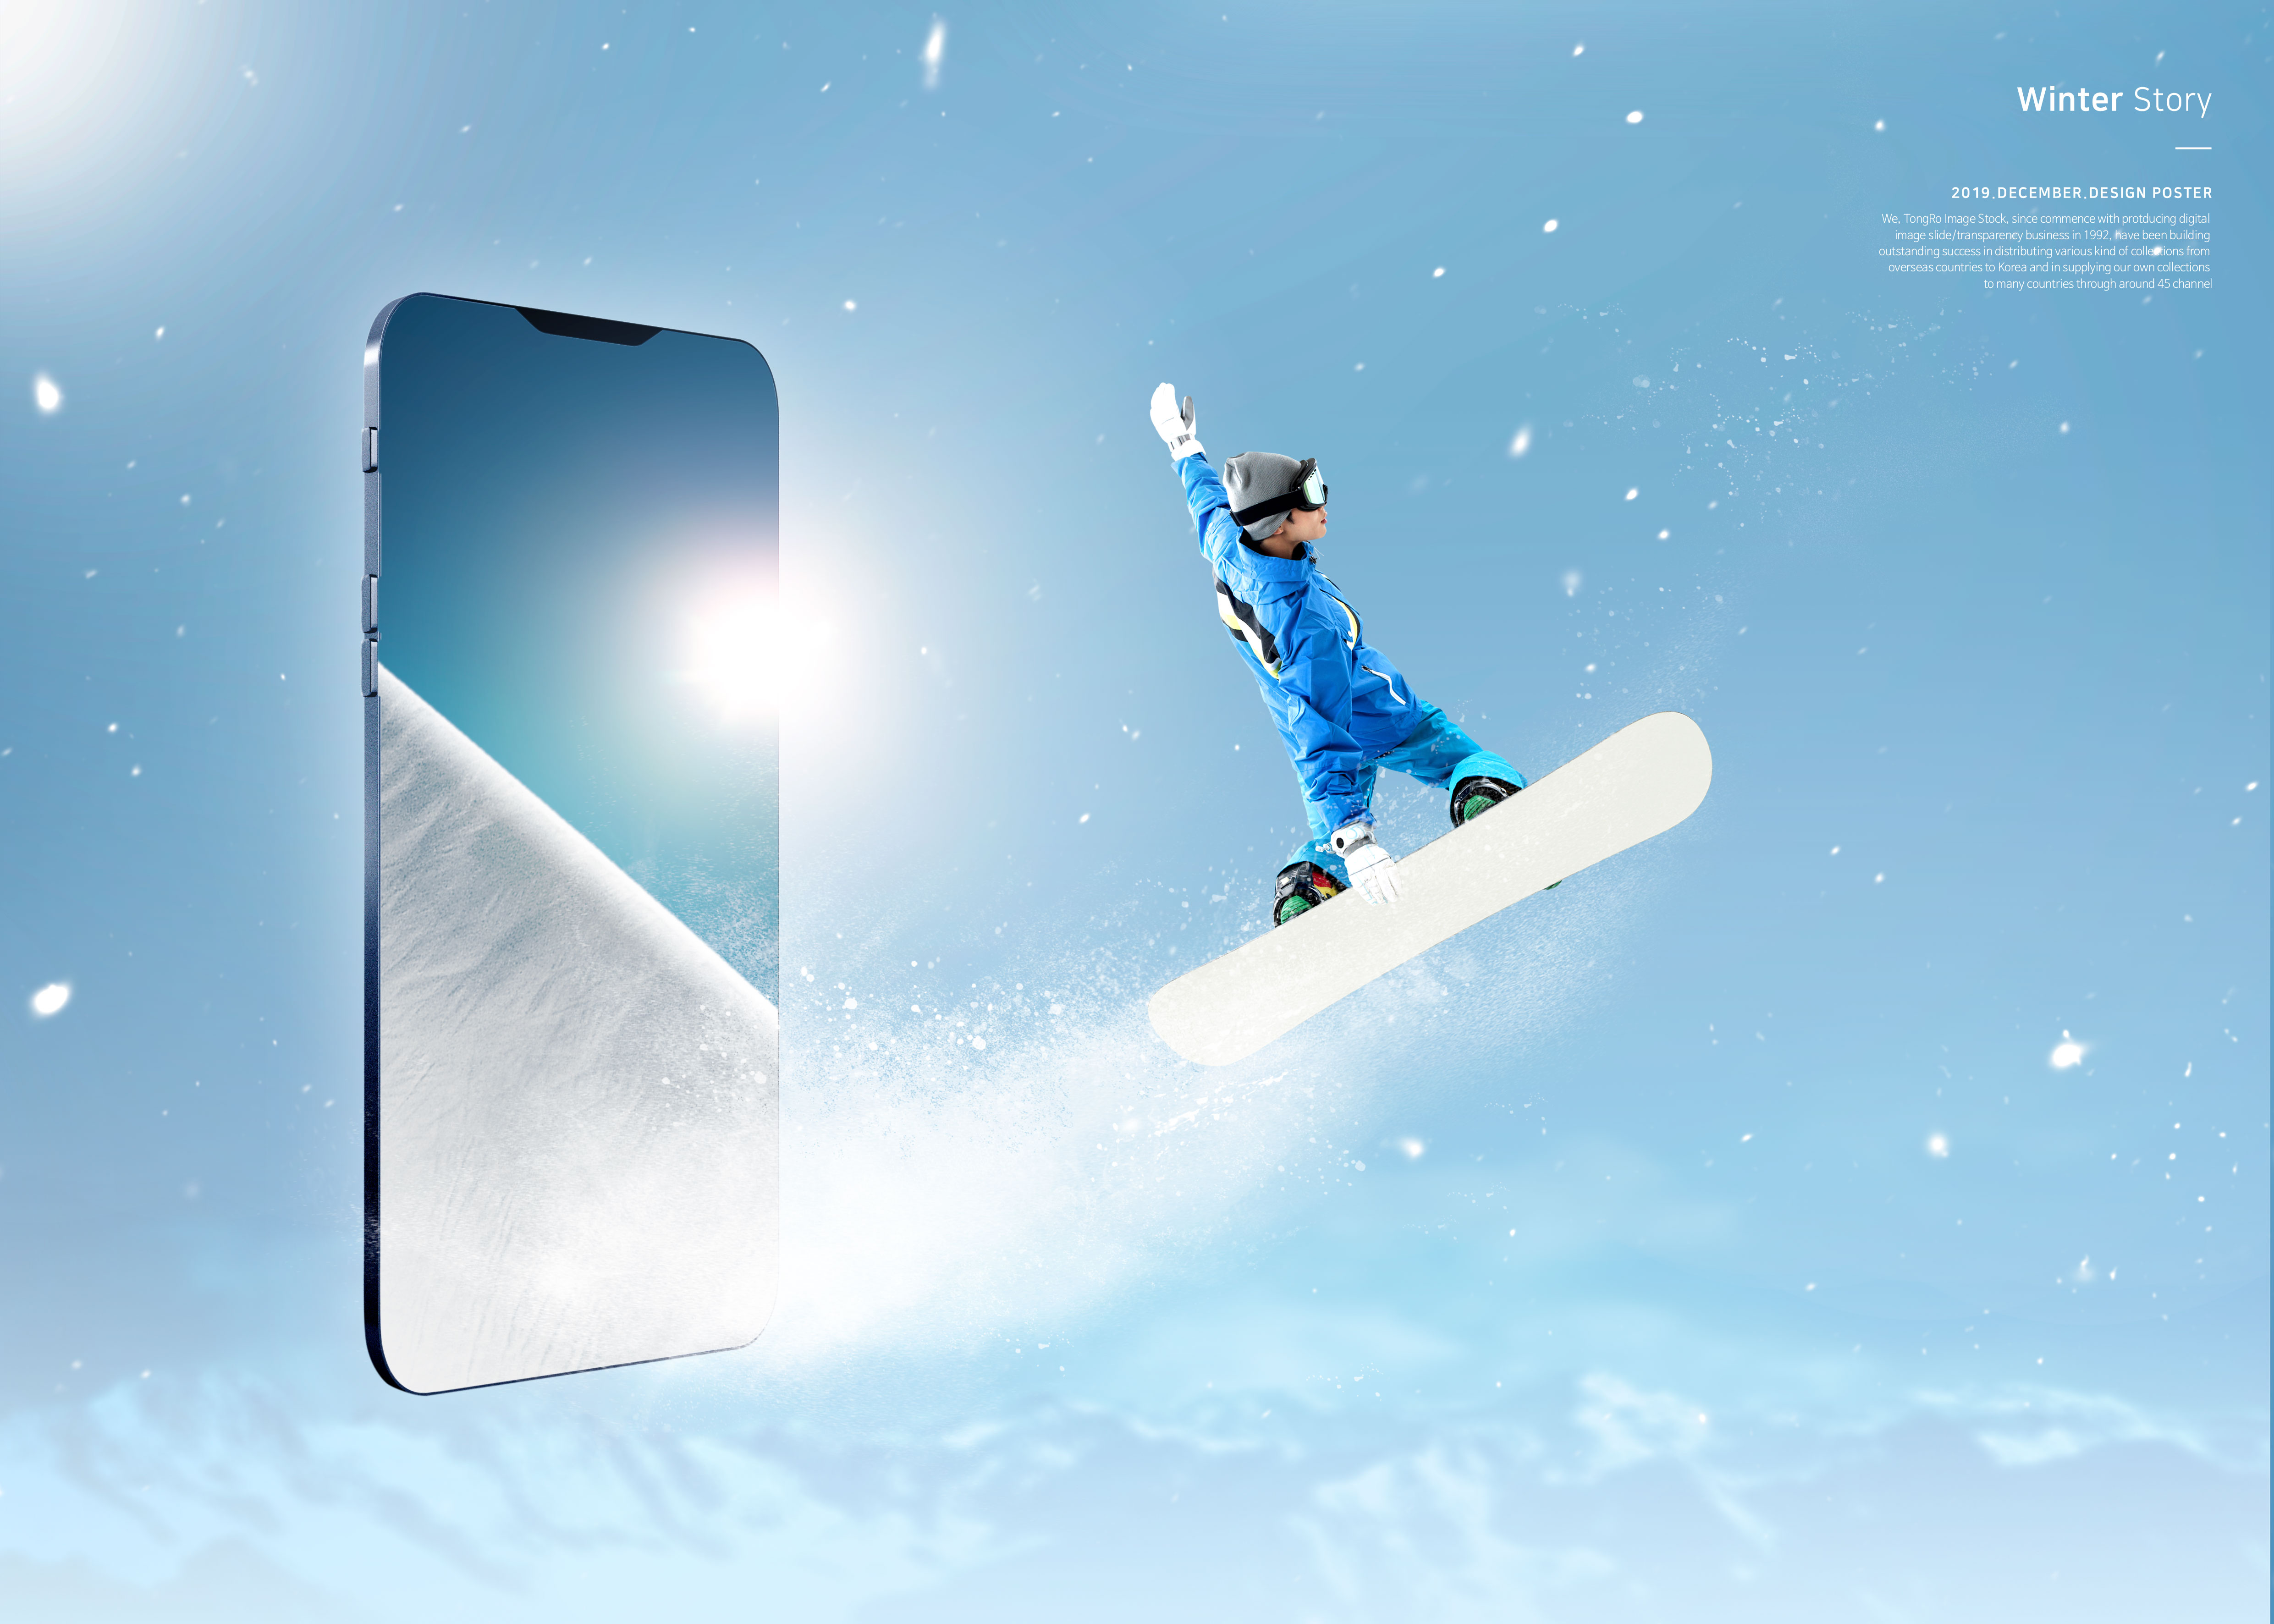 冬季故事雪山滑雪运动推广海报PSD素材16图库精选模板插图